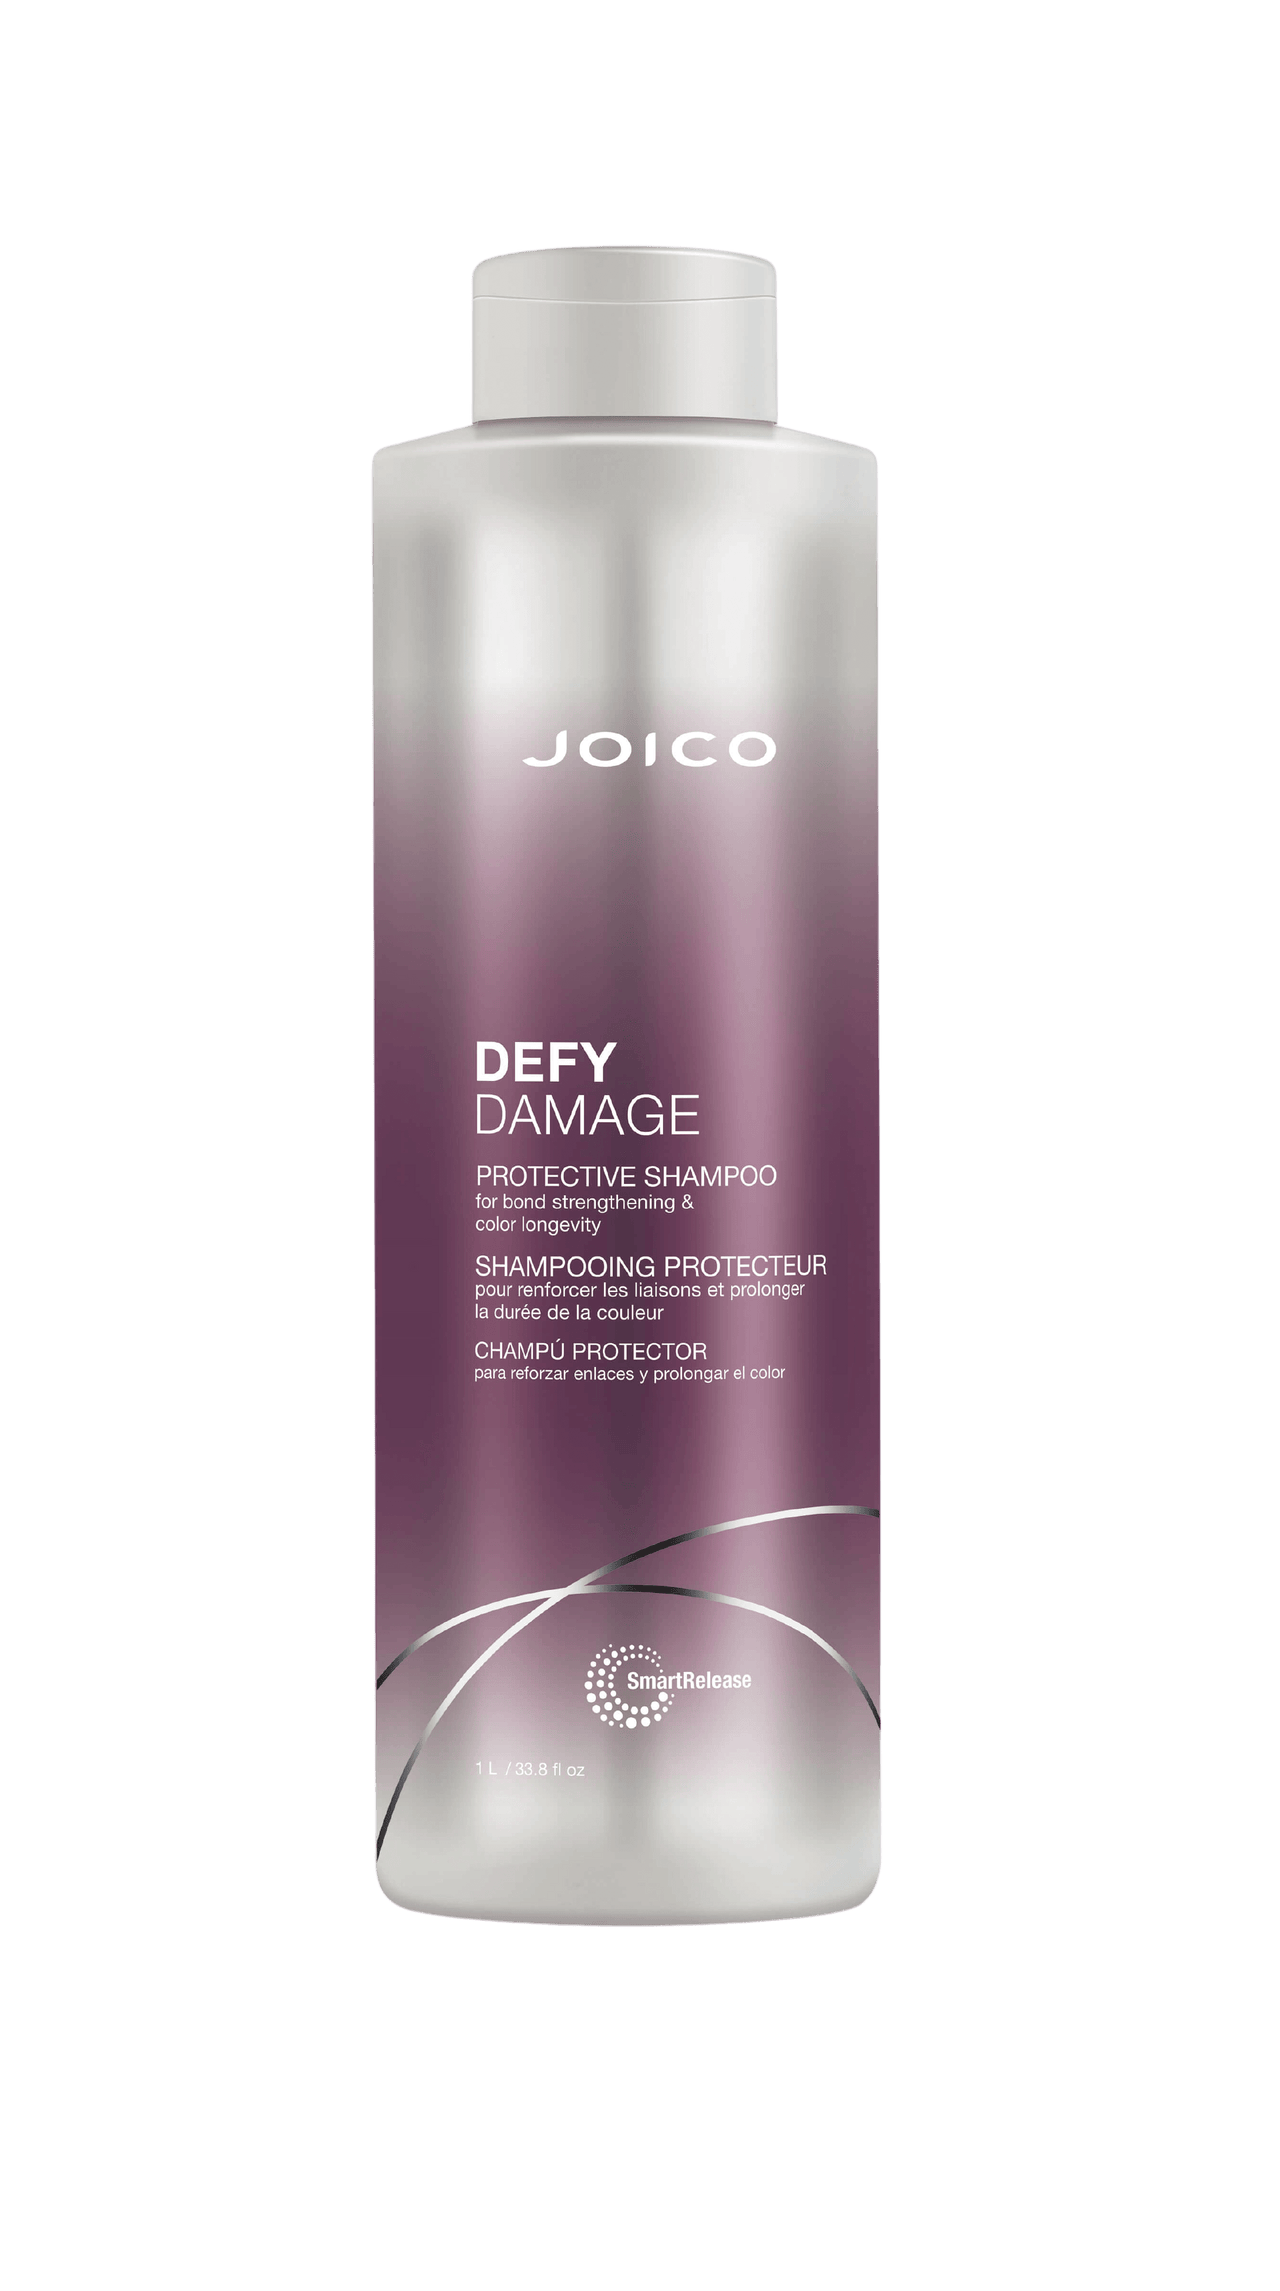 Joico Defy Damage Protective Shampoo 33.8oz Bottle